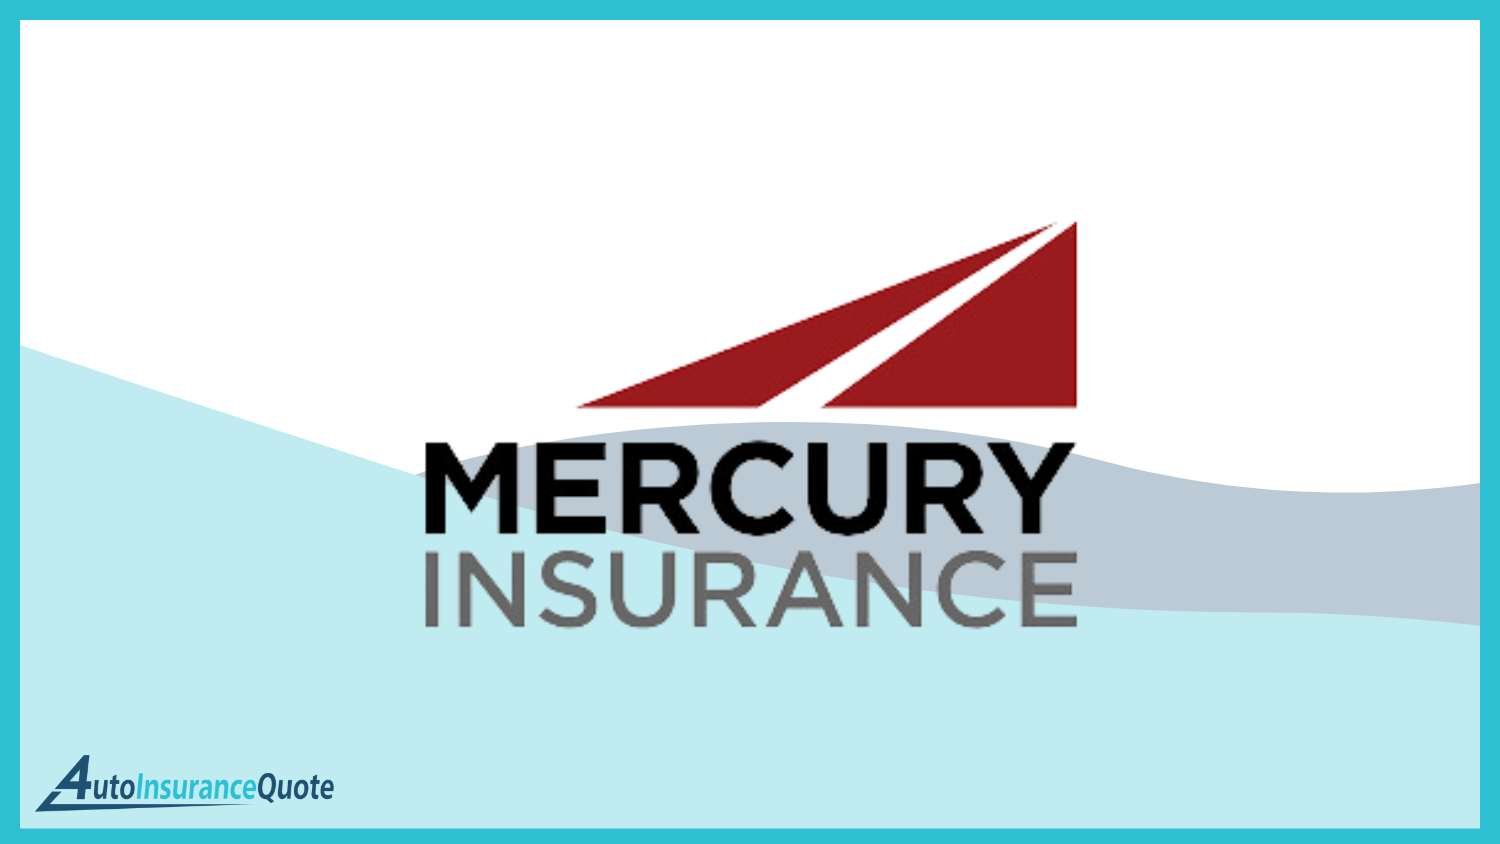 Mercury: Best Auto Insurance for Rebuilt Titles